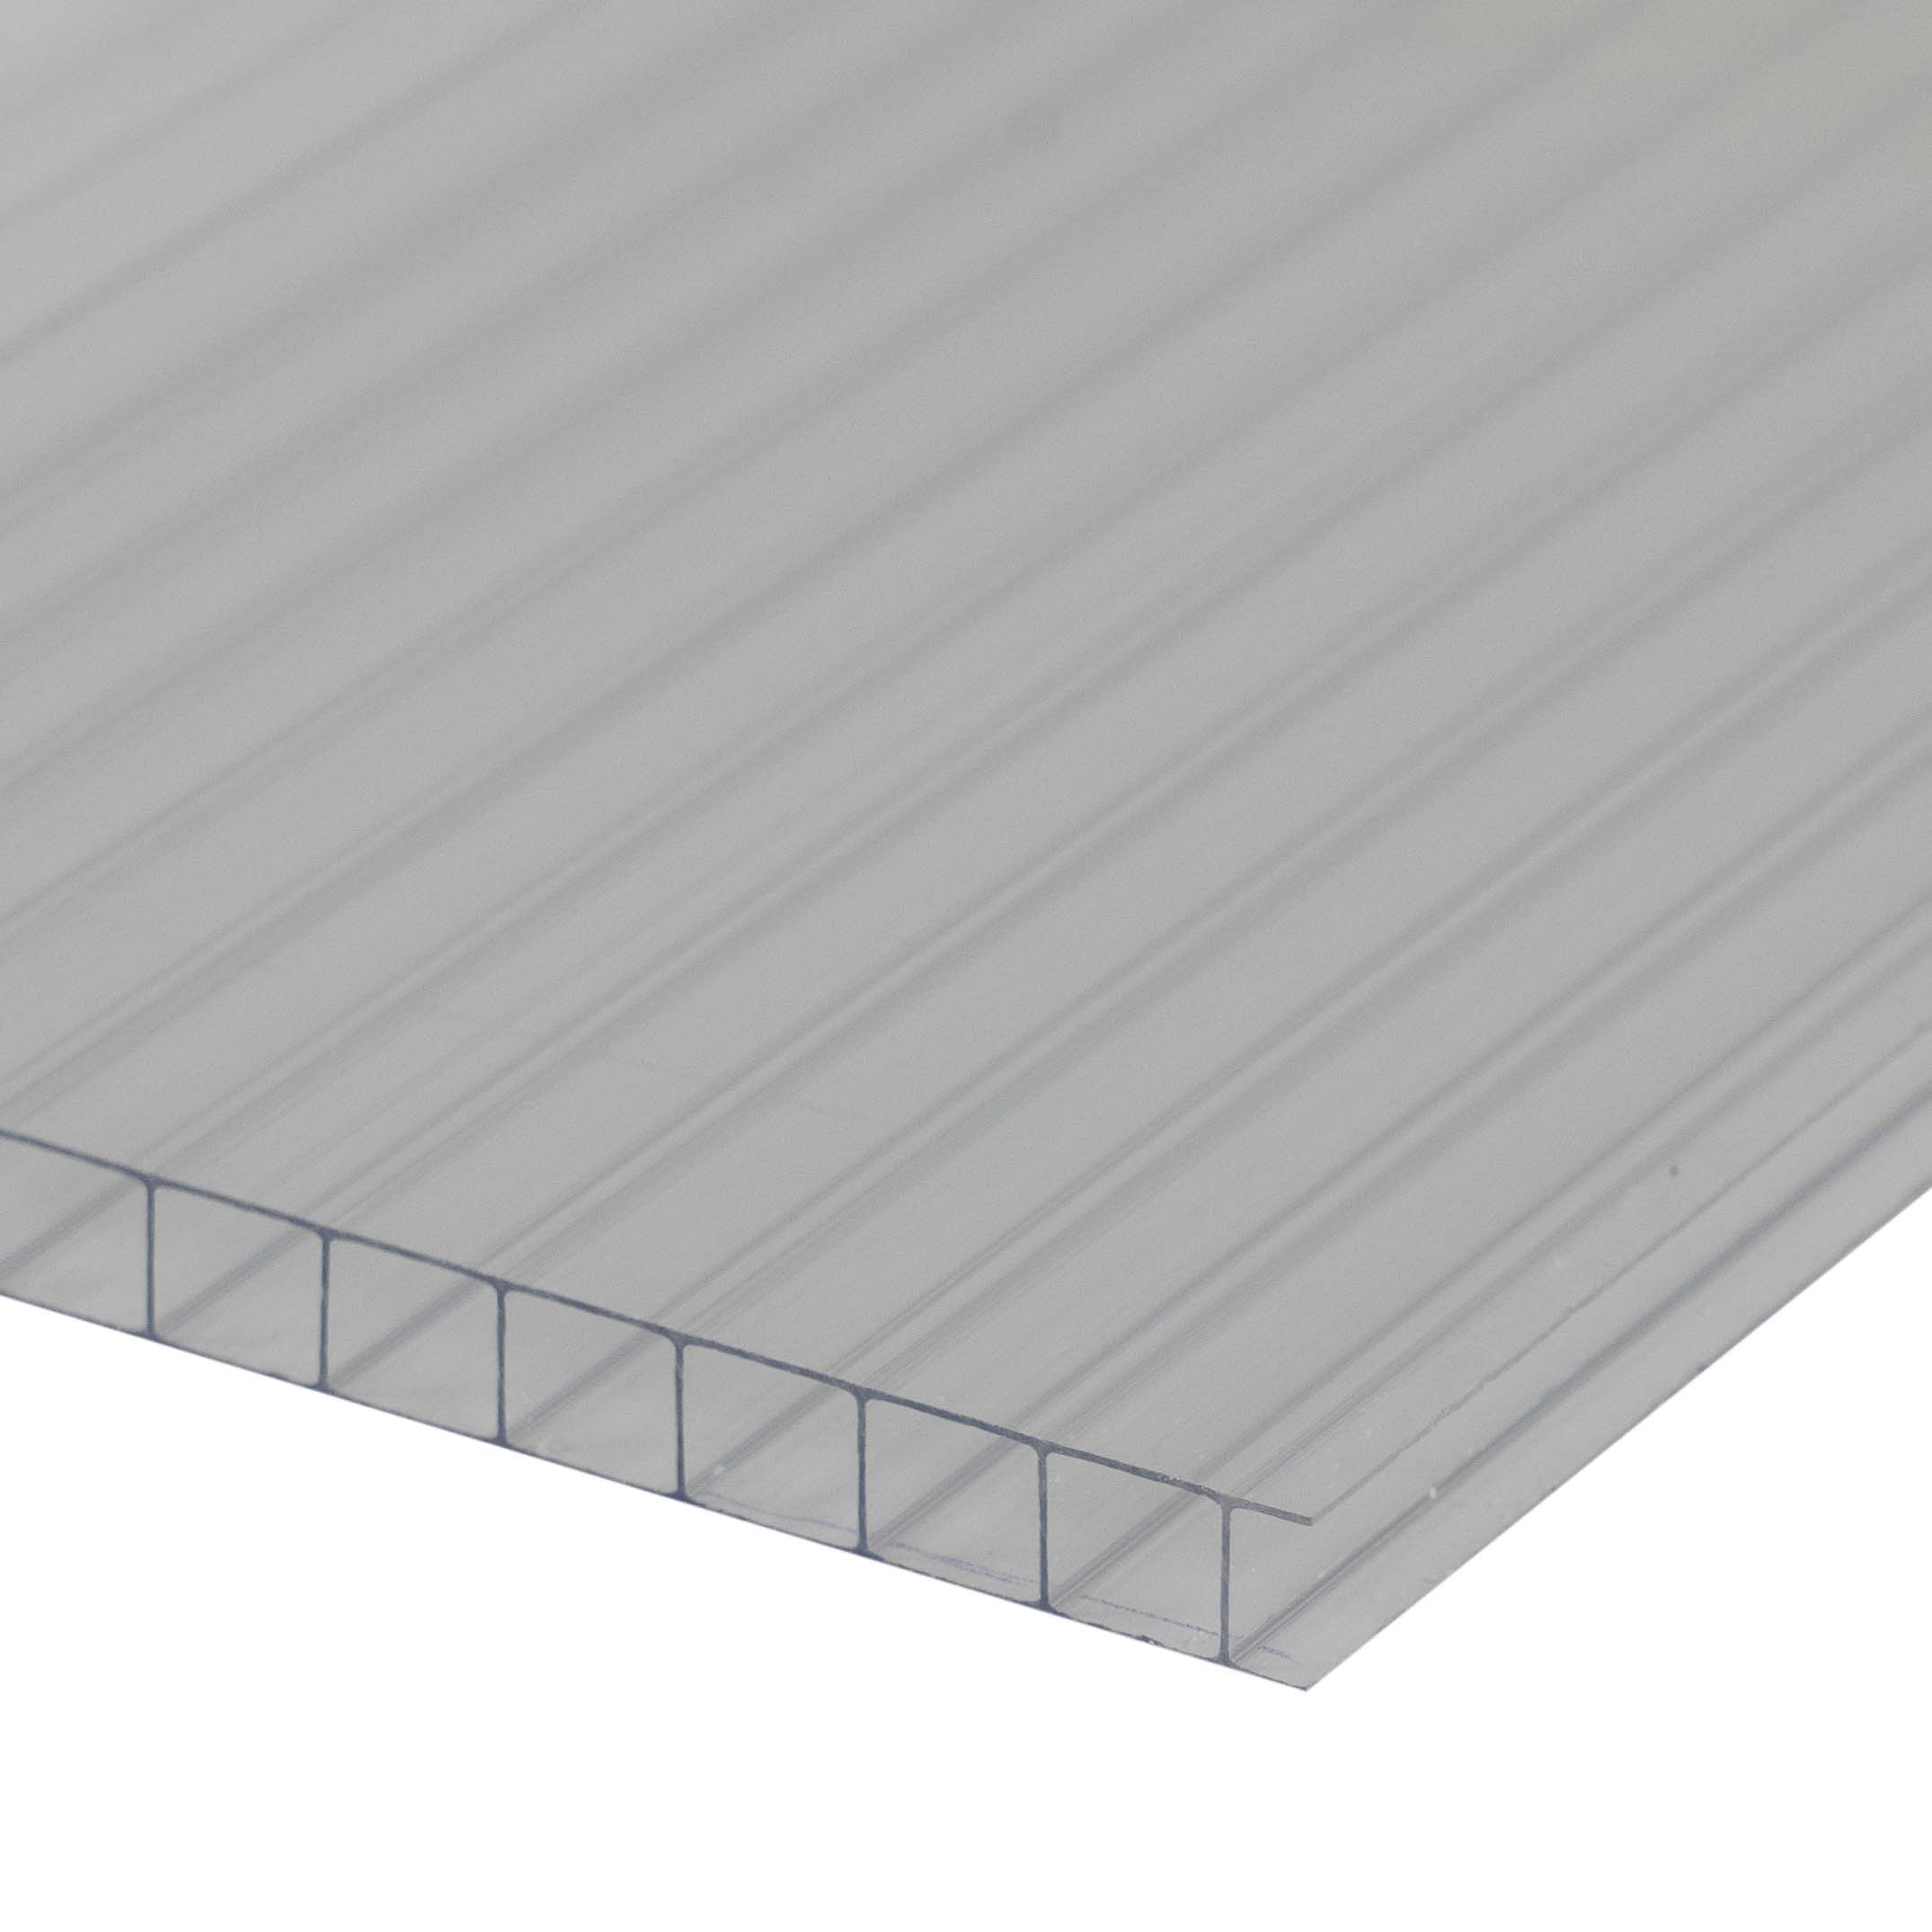 Doppelstegplatte 6 mm Farblos / Klar - Polycarbonat Hohlkammerplatten - Hagelfest